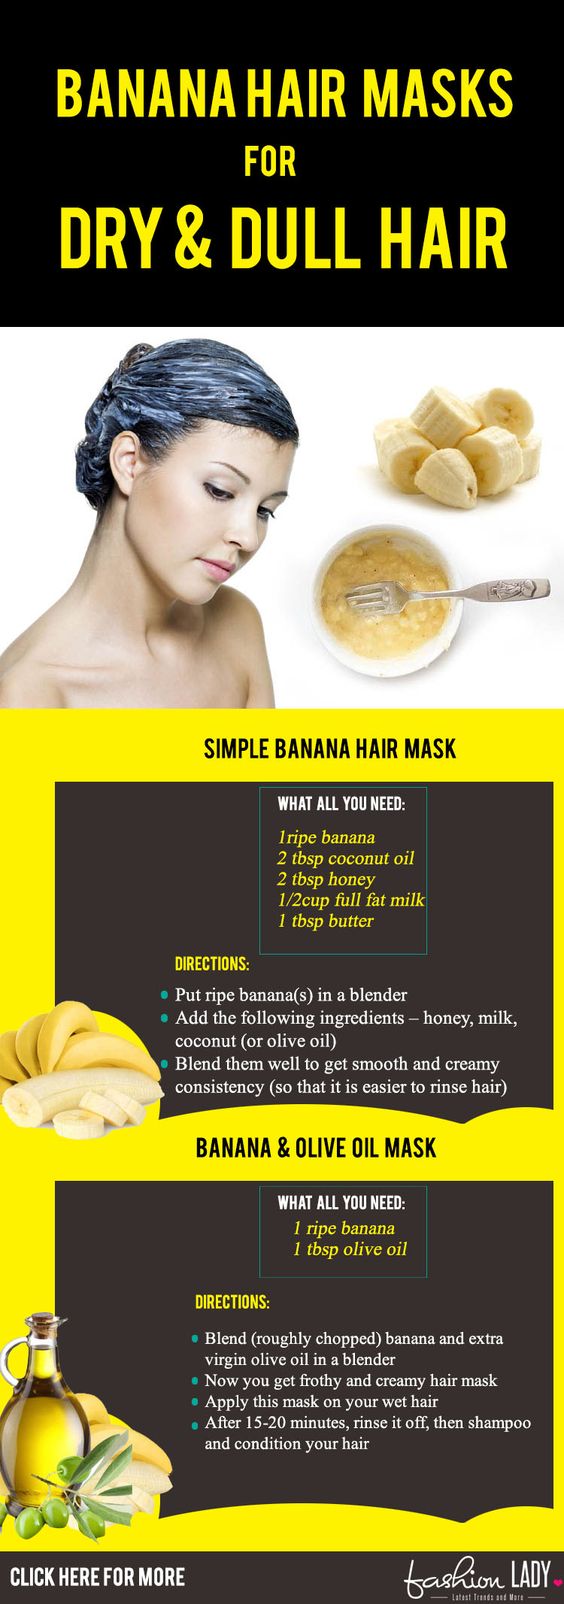 17 Natural Banana Hair Masks For Dry And Dull Hair